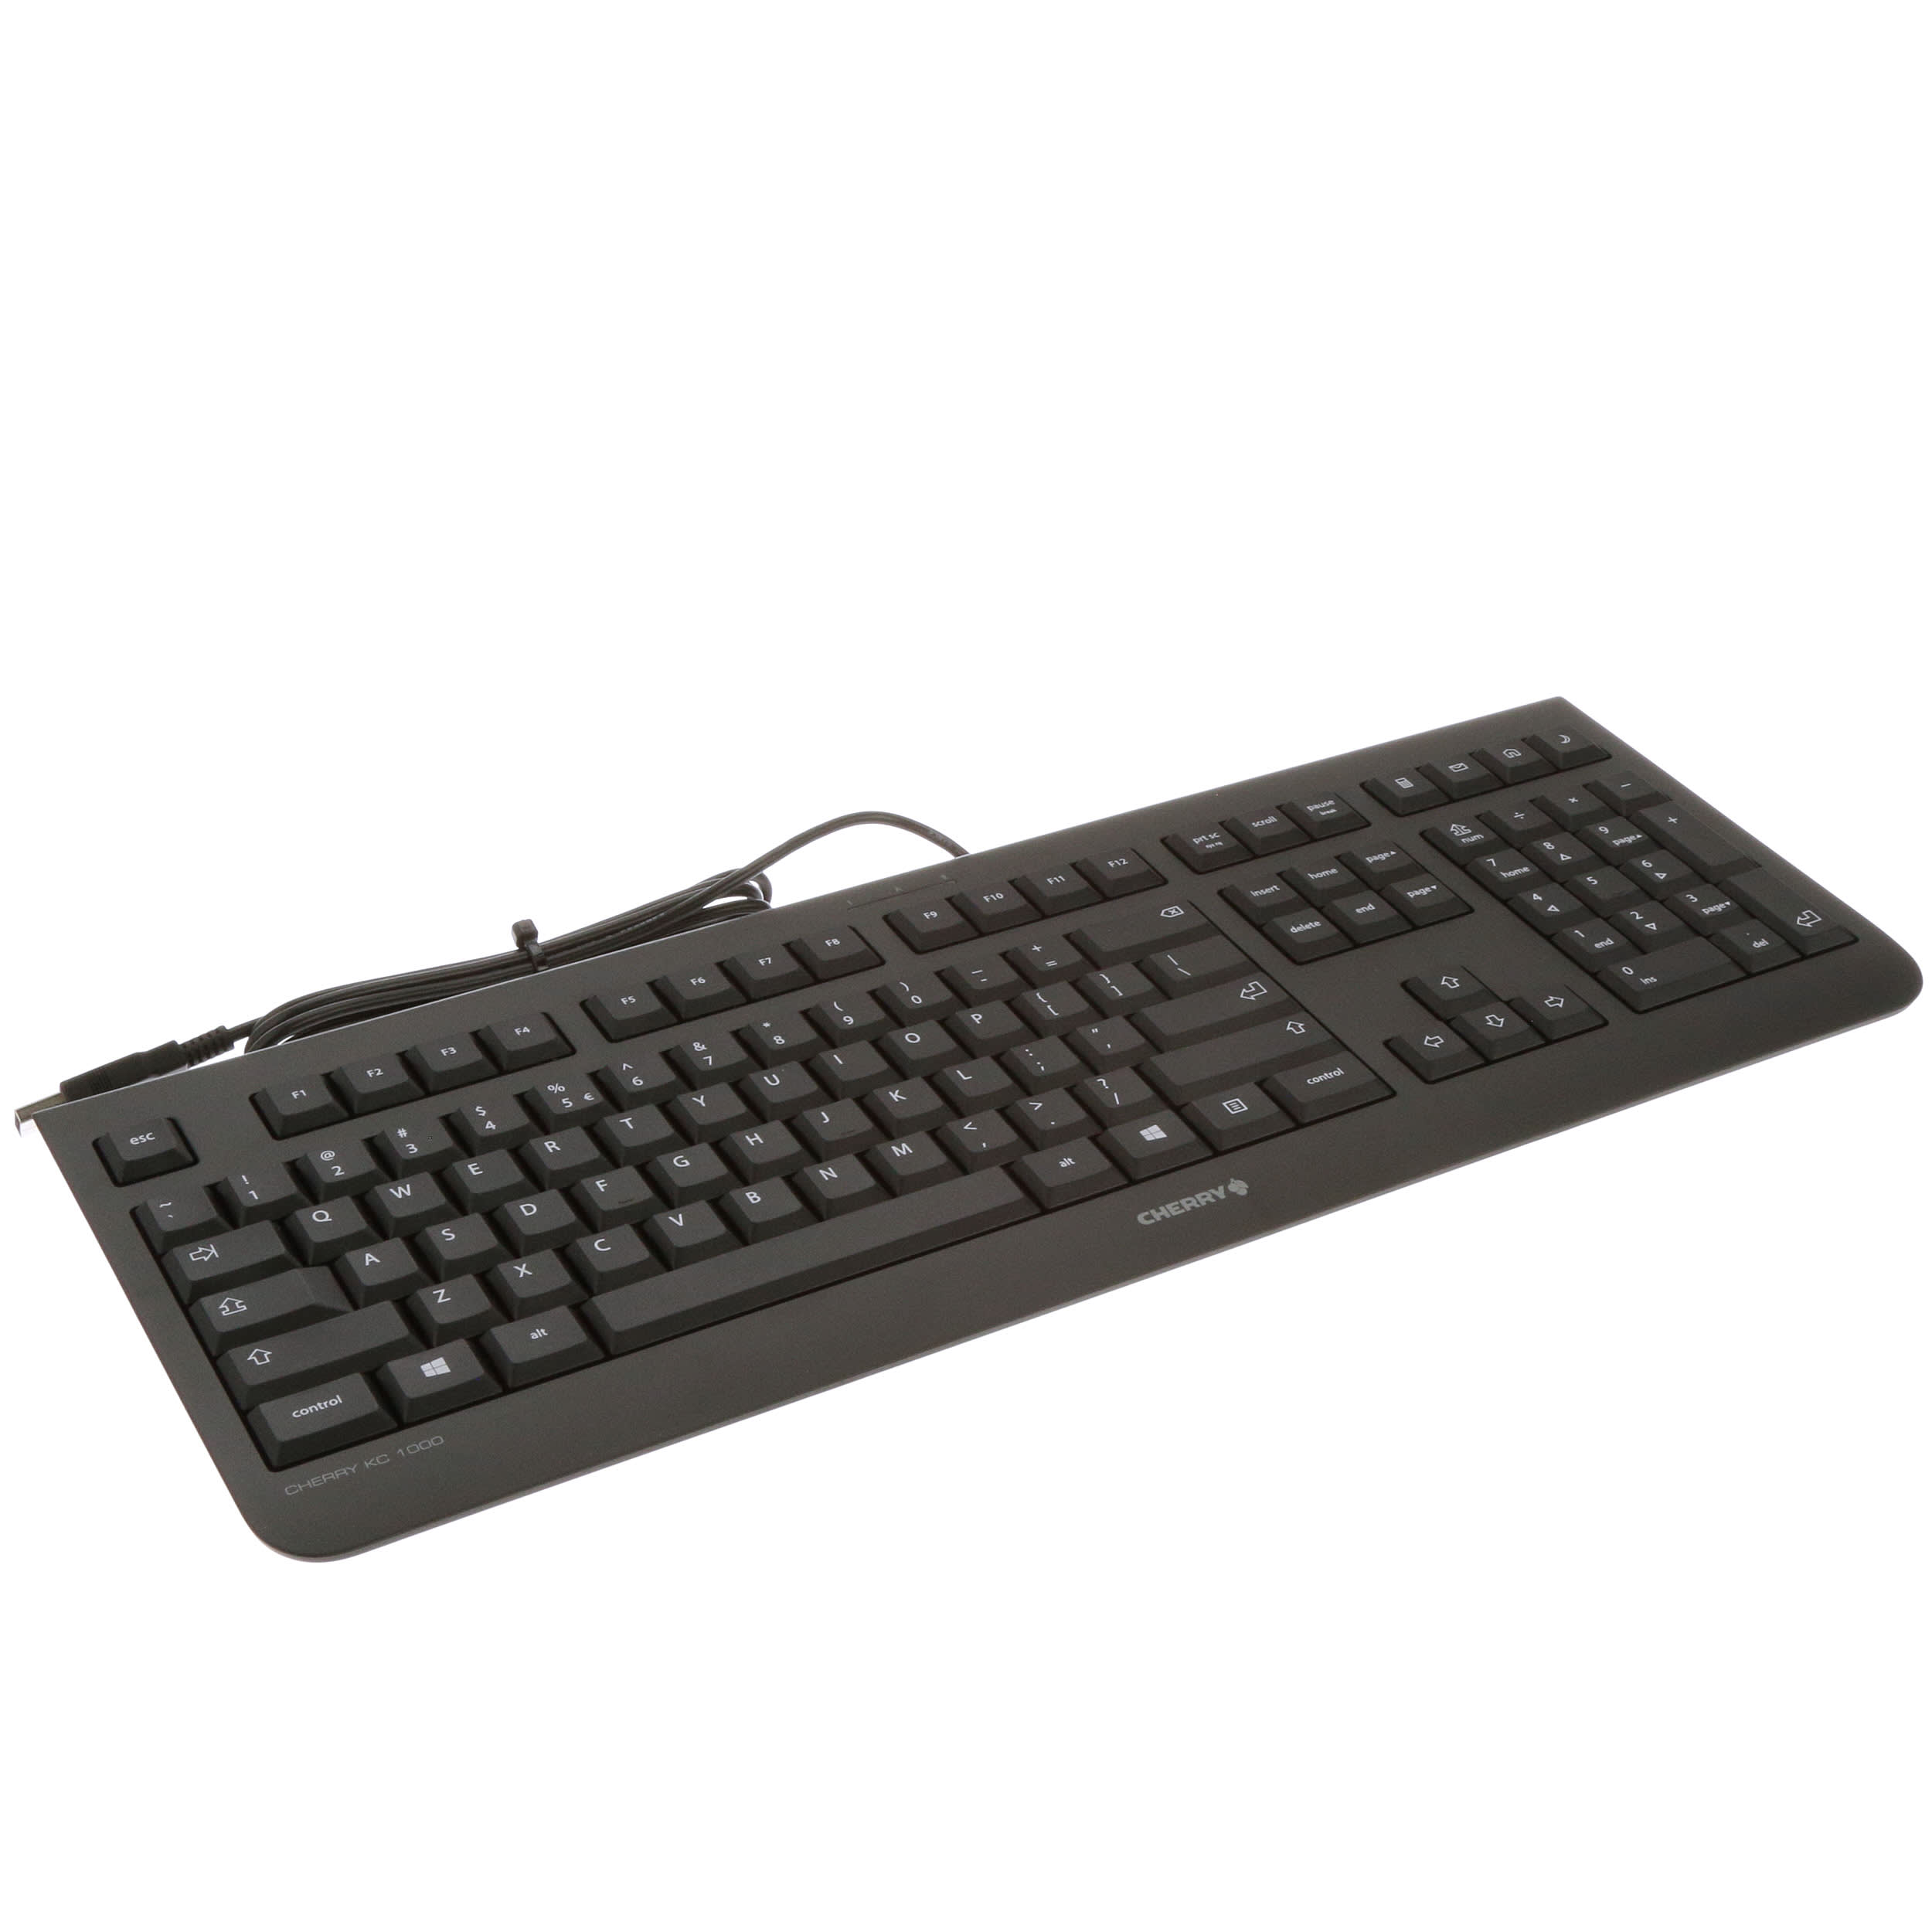 Cherry KC 1000, Smartcard Keyboard (JK-A0100EU-2)